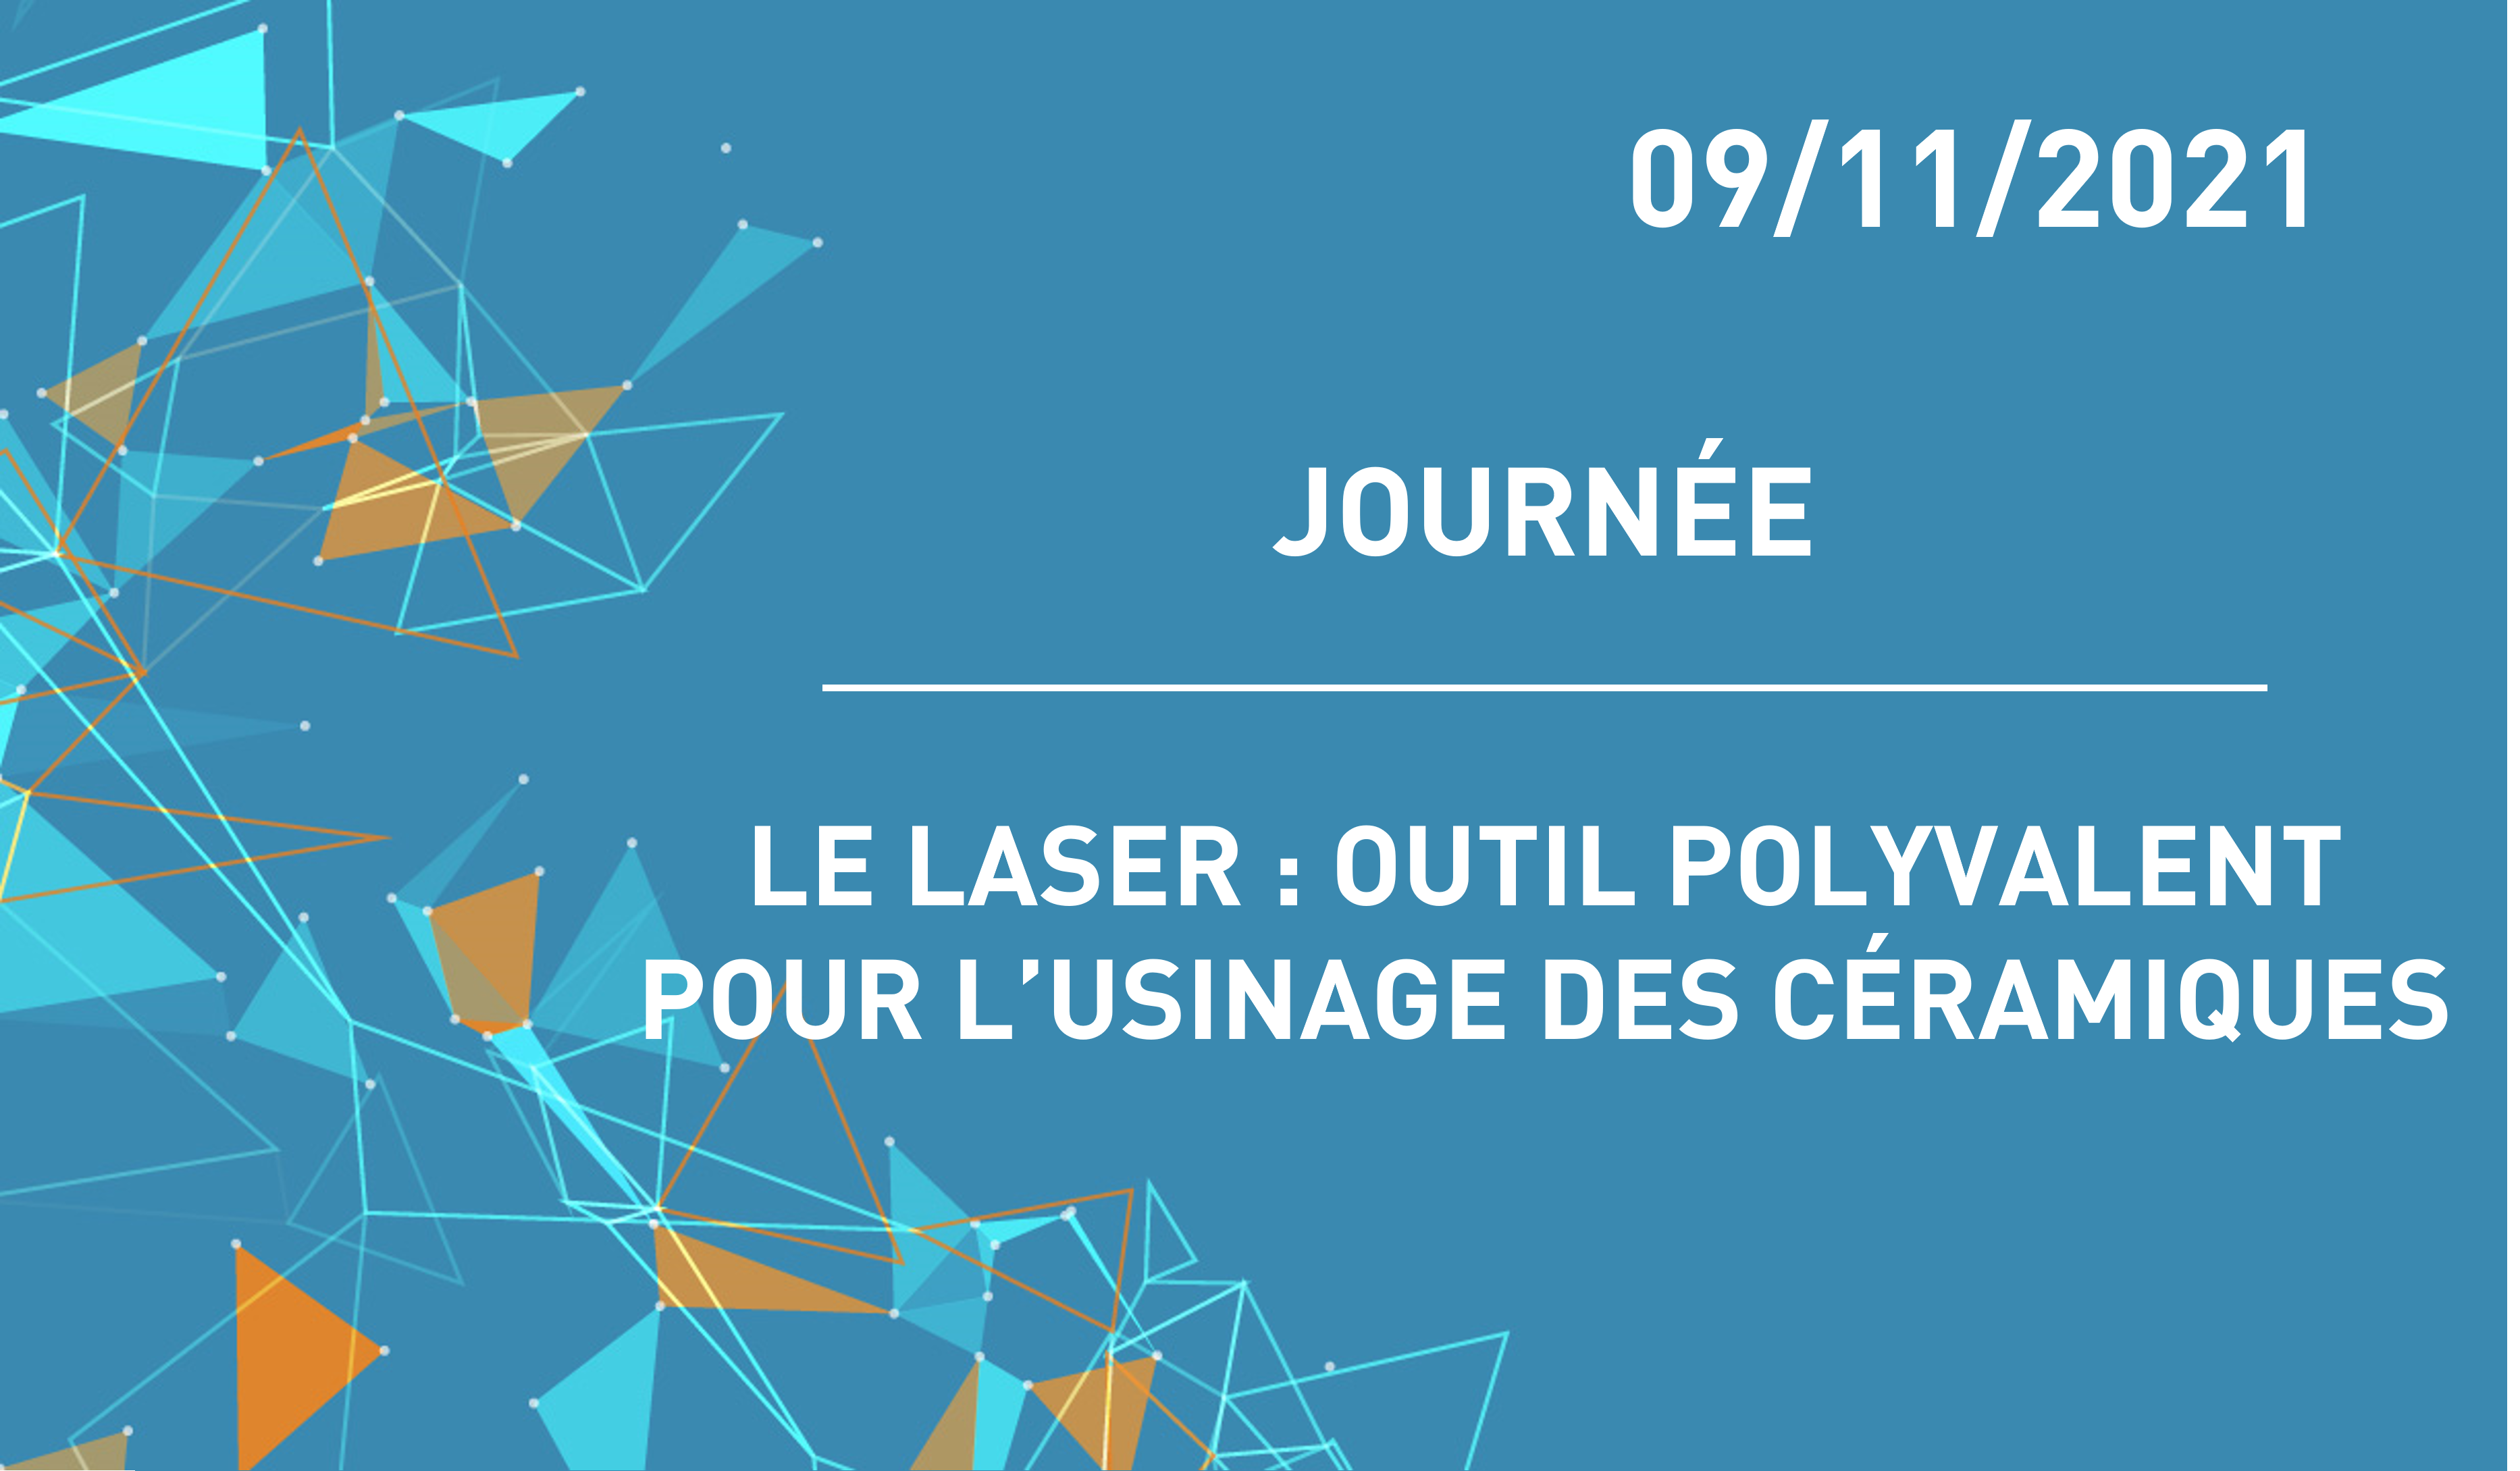 Workshop "Le laser : un outil pour l'usinage des céramiques" 